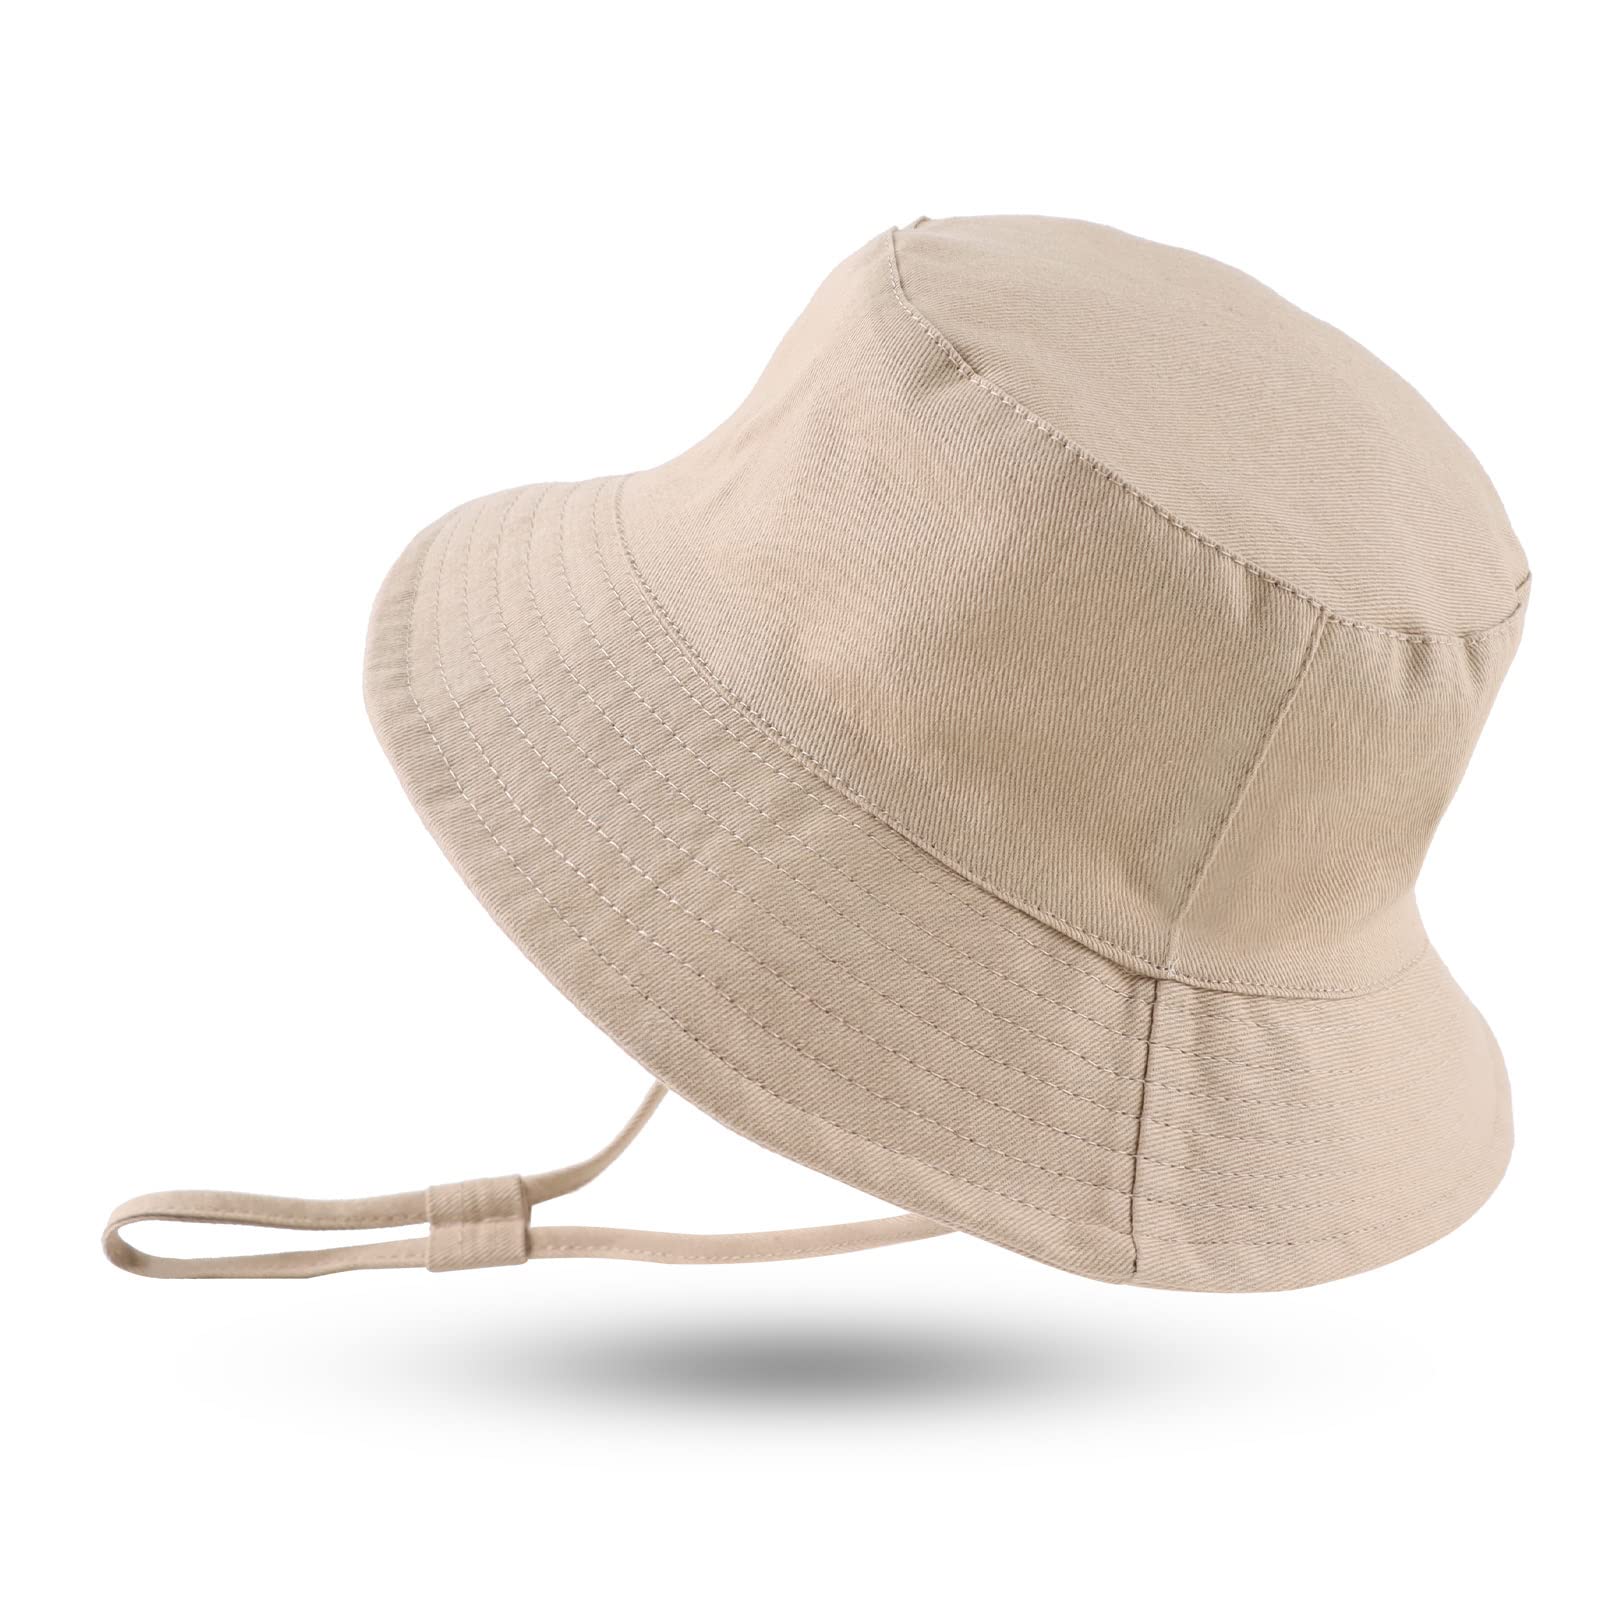 Populaire XIAOHAWANG Large Bord Chapeau de Soleil Bébé Enfant Bonnet d’été pour Garçon Fille Anti-UV Casquette Réglable J7fv8ejAc boutique en ligne